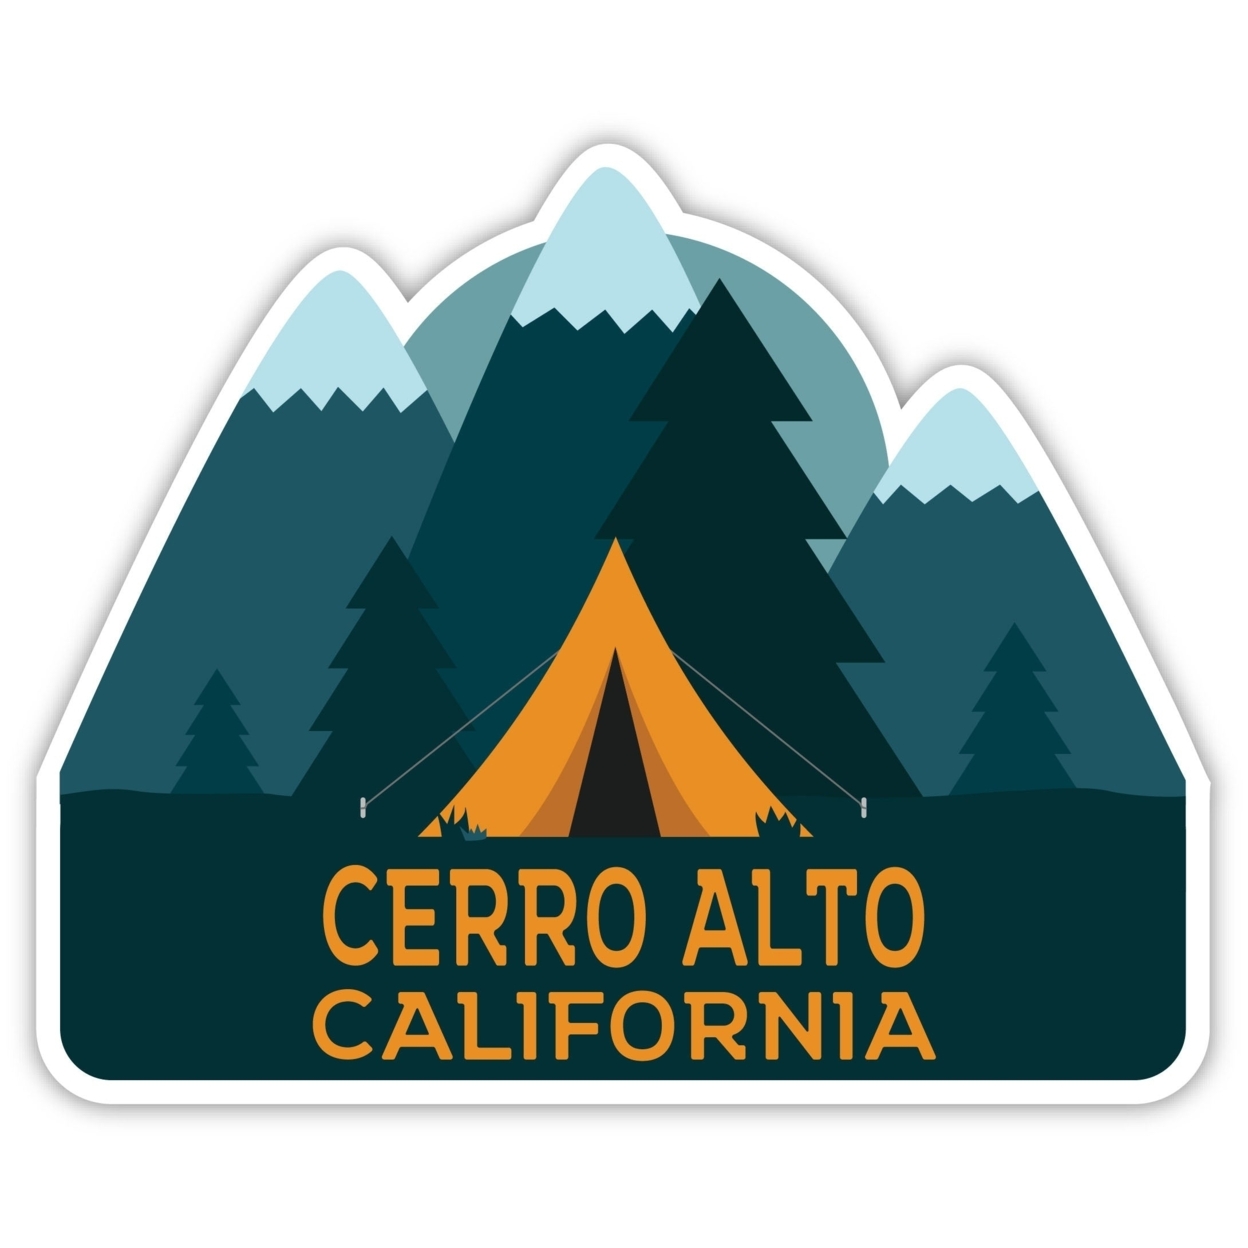 Cerro Alto California Souvenir Decorative Stickers (Choose Theme And Size) - 4-Pack, 4-Inch, Tent